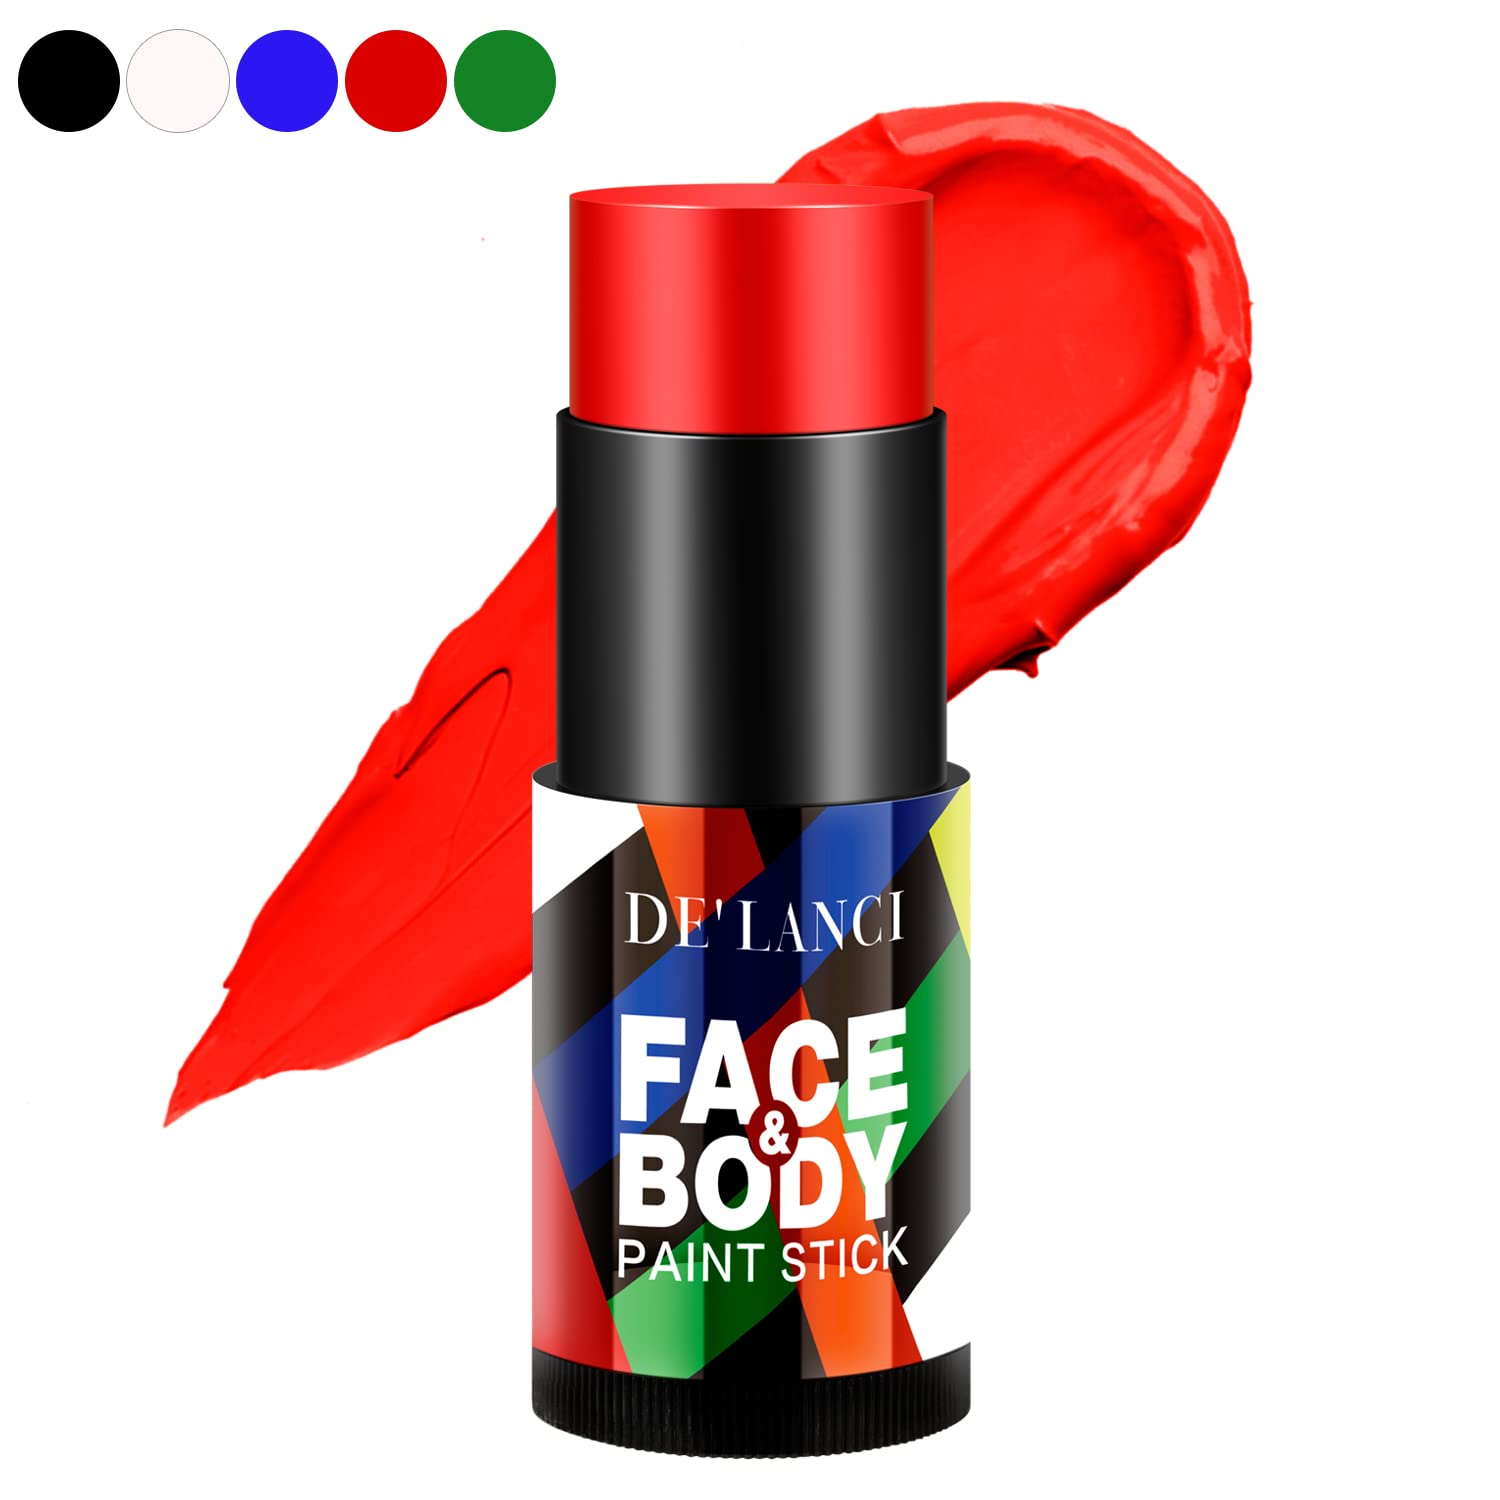 DE'LANCI Red Face Paint Stick, Cream Blendable Body [...]